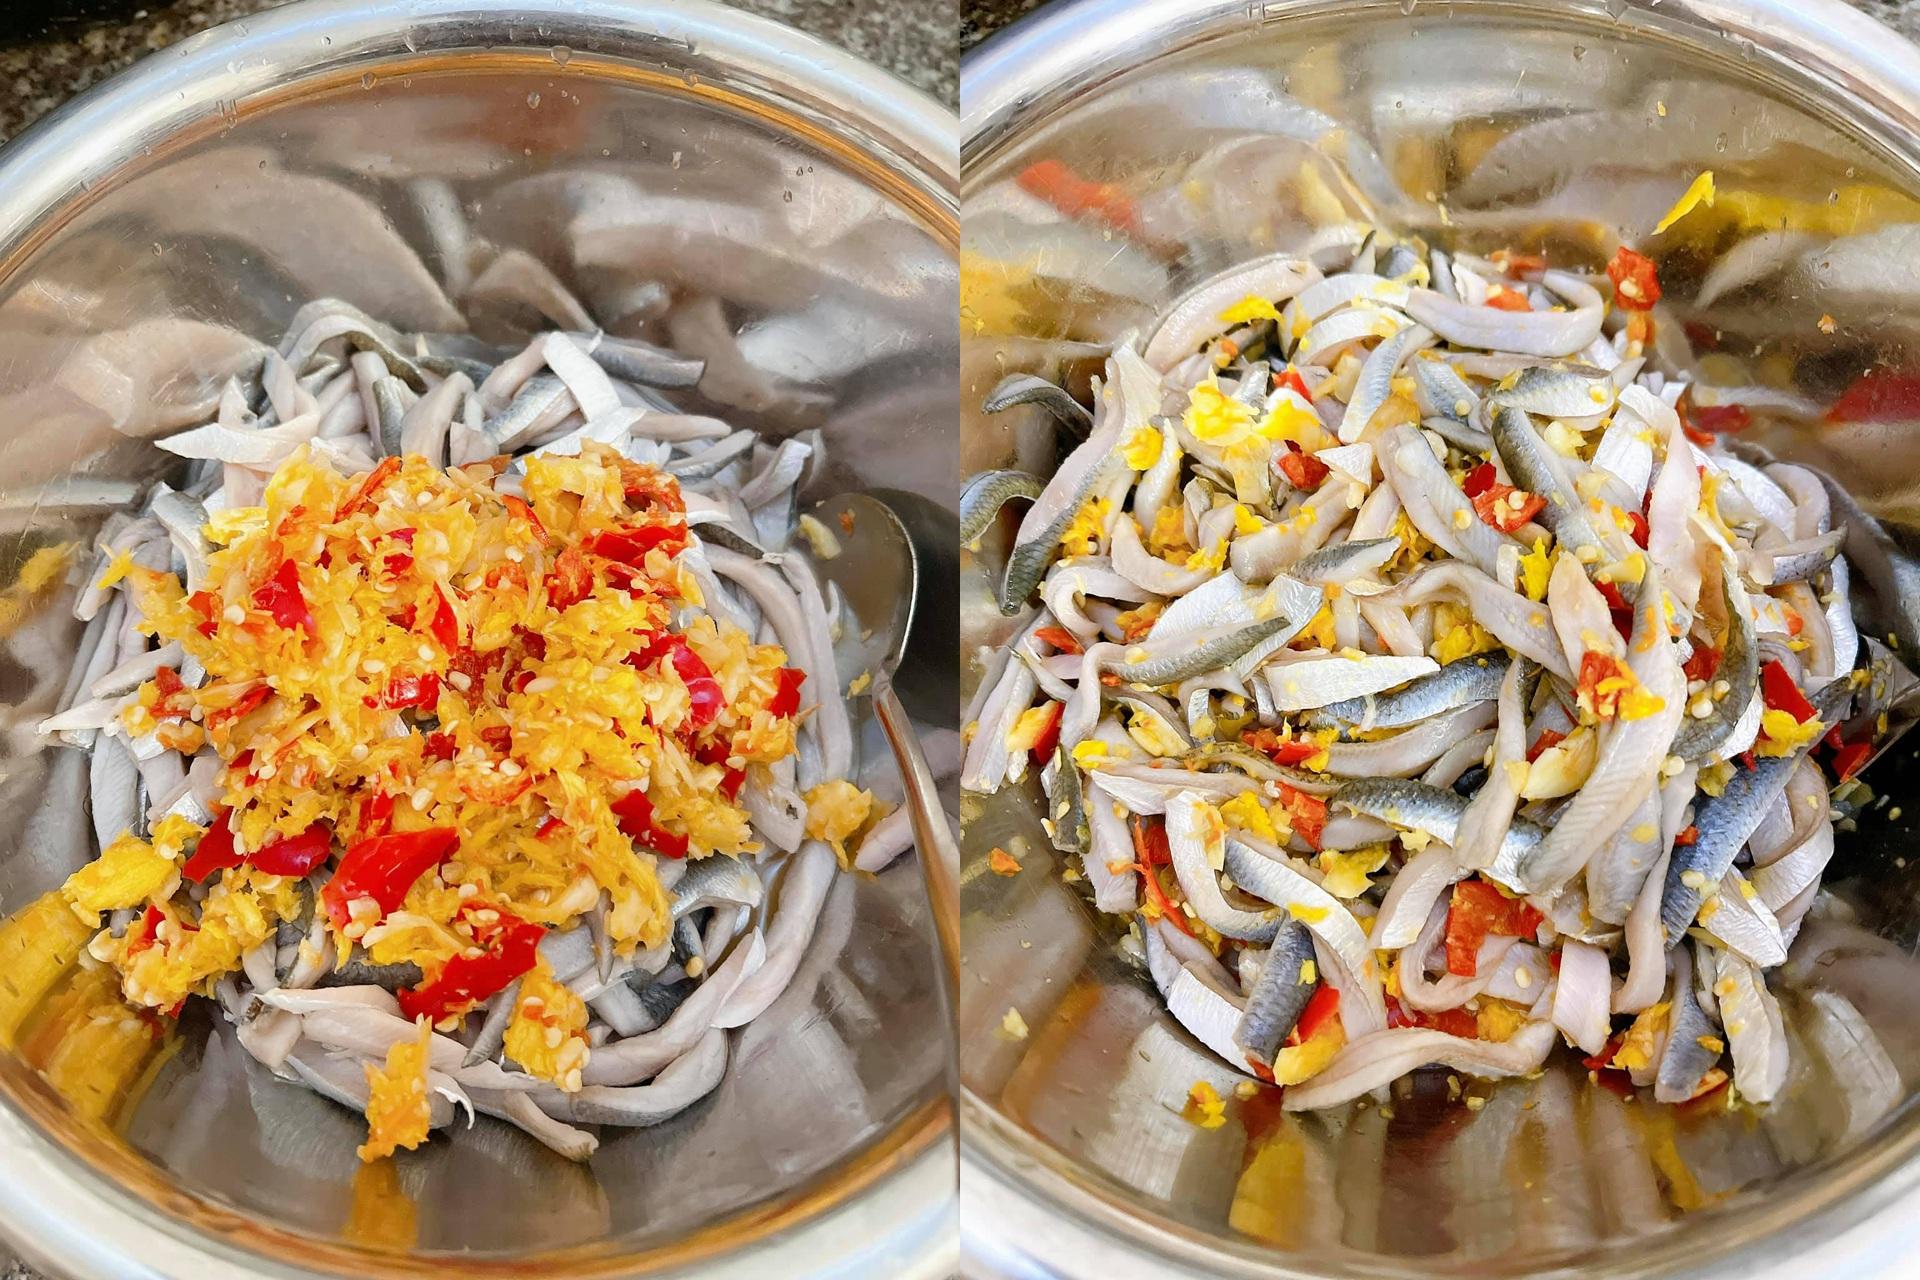 Đặc sản cá trích "ăn tươi nuốt sống" nổi tiếng ở Đà Nẵng - 3